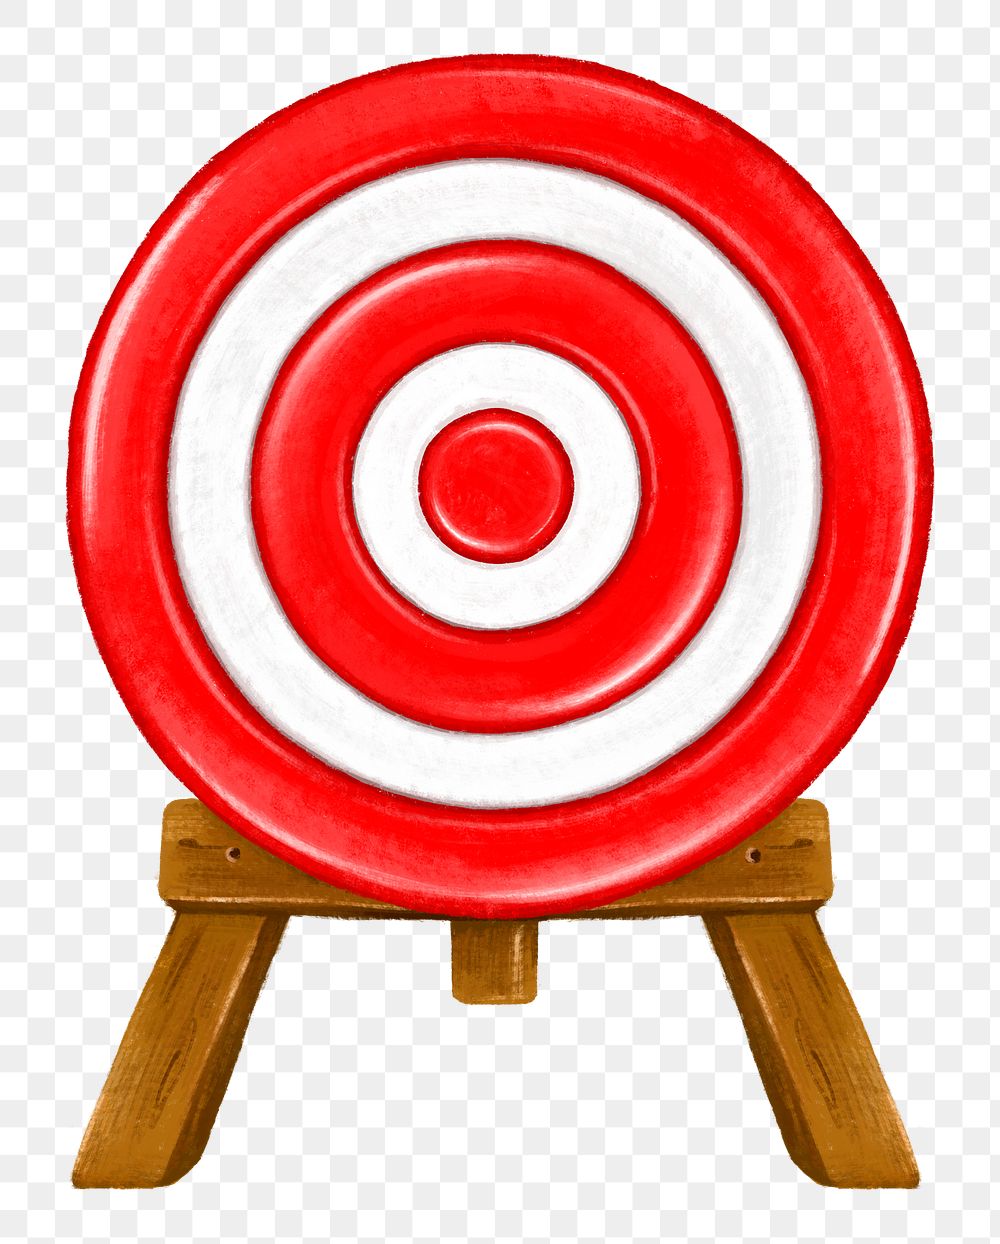 Red dartboard target png, transparent background